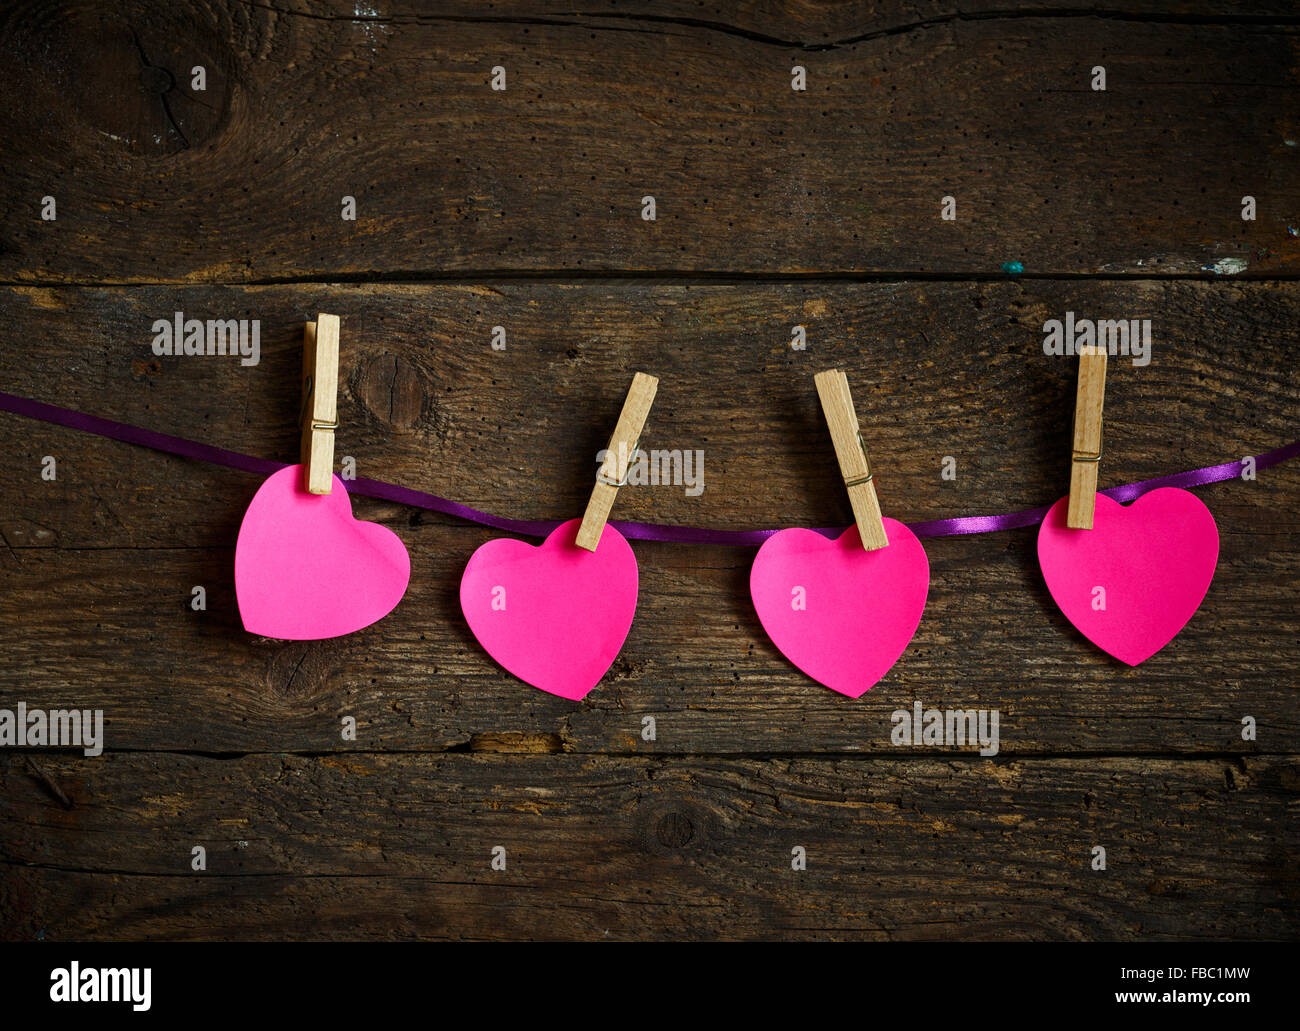 Coeur rose papier coupé avec pinces à linge. Image de Valentines Day saison. Banque D'Images